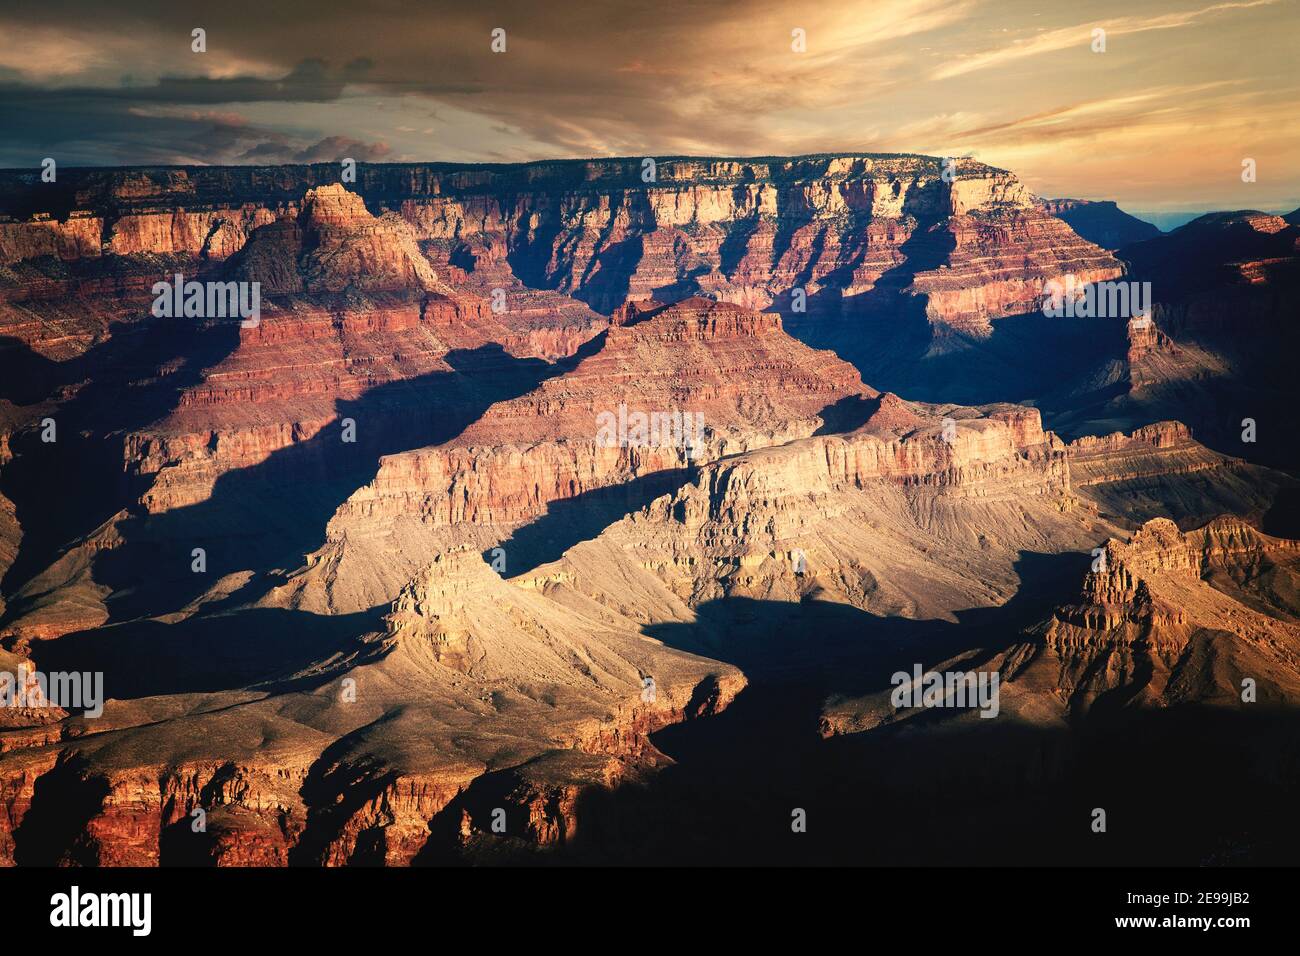 Au fur et à mesure que le soleil se lève, les contours et les couches du Grand Canyon sont révélés. Arizona. Banque D'Images